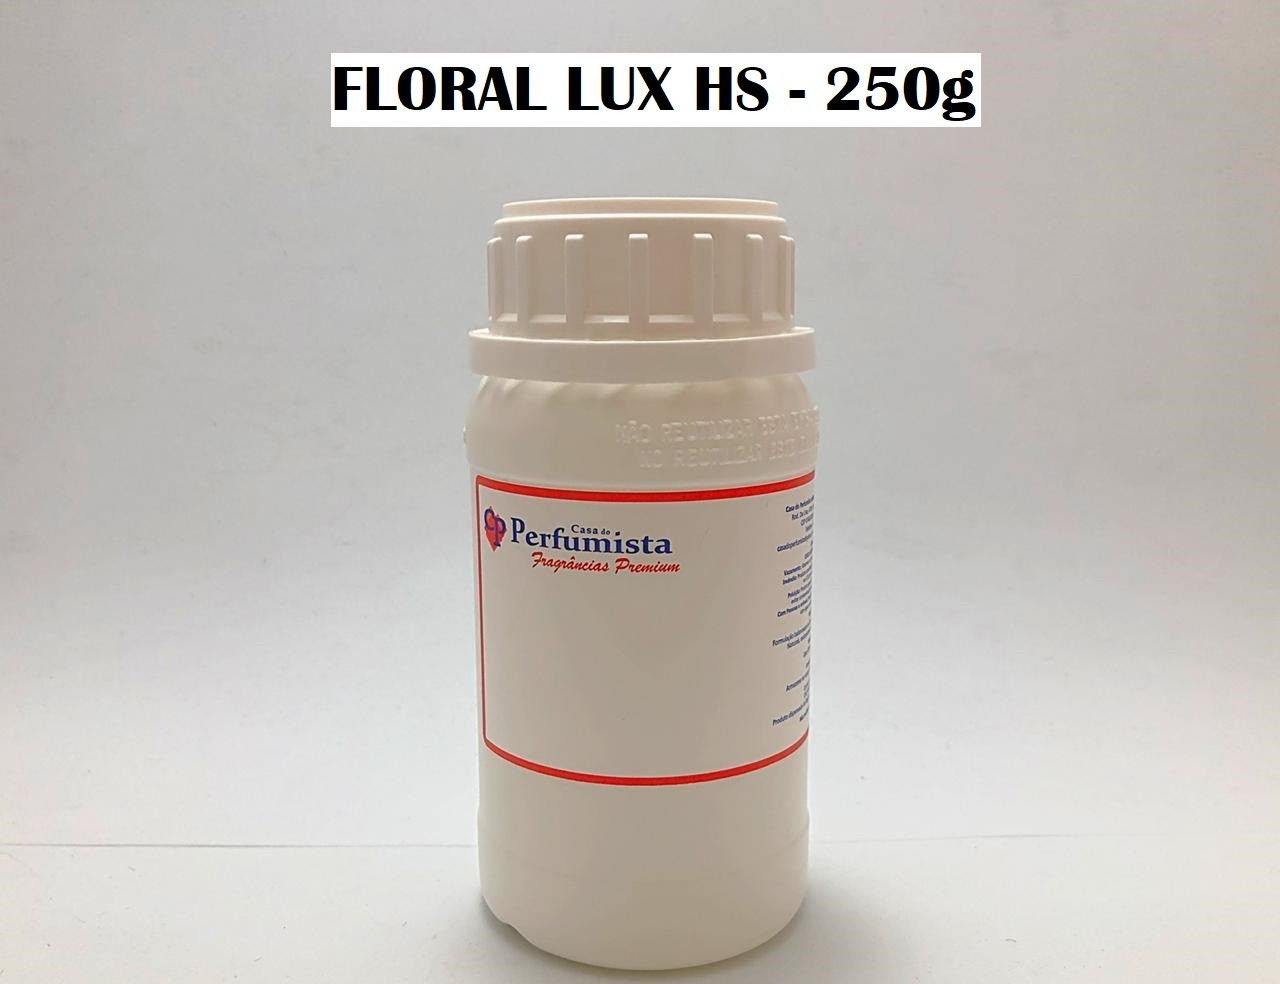 FLORAL LUX HS - 250g